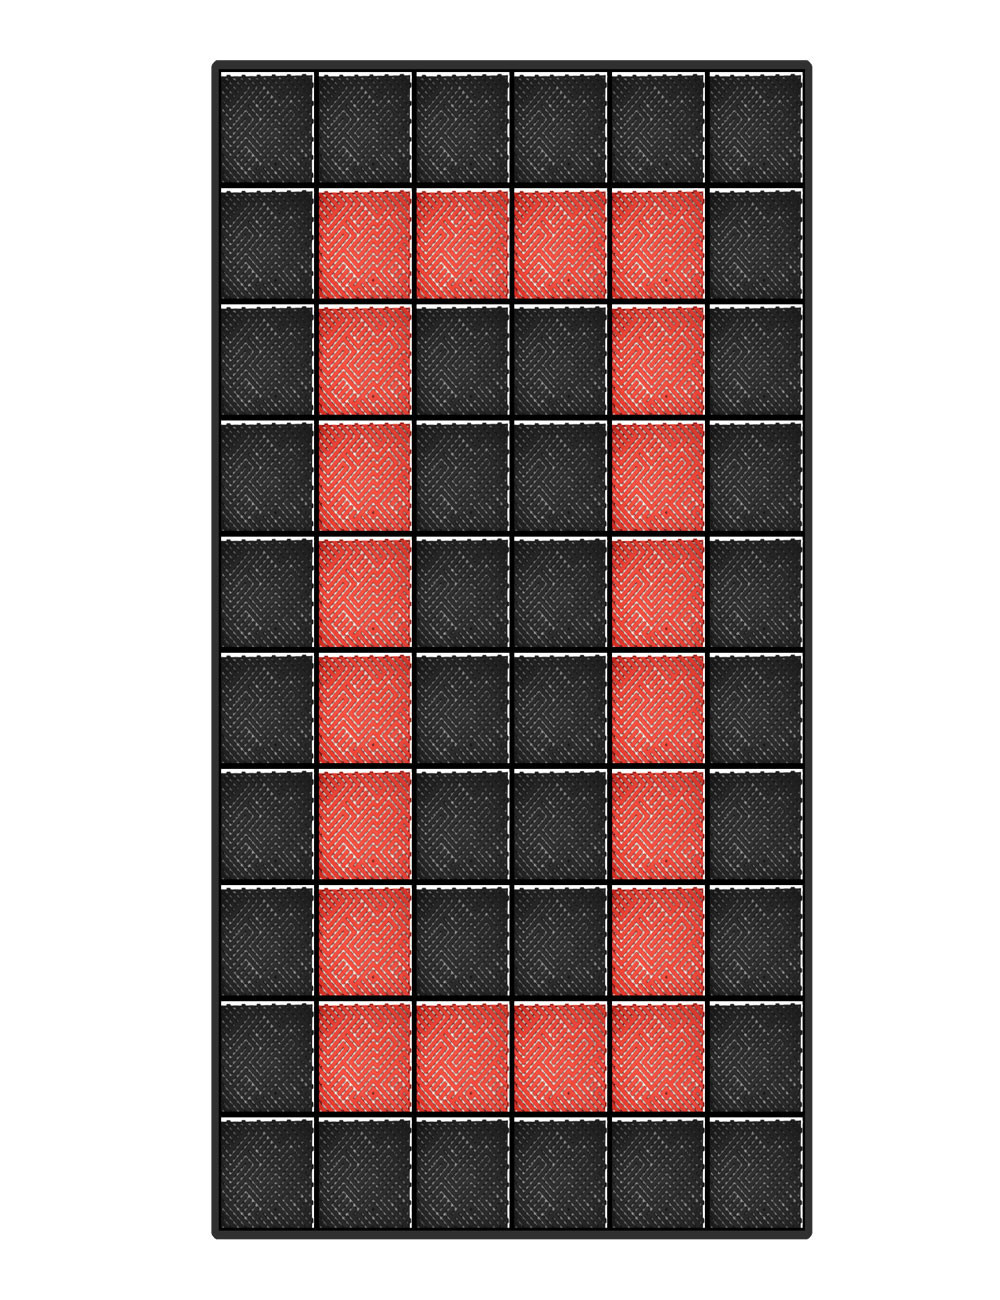 Kit dalles de sol motif racing pour garage - 15m² - 5 m x 3 m - Noir et rouge